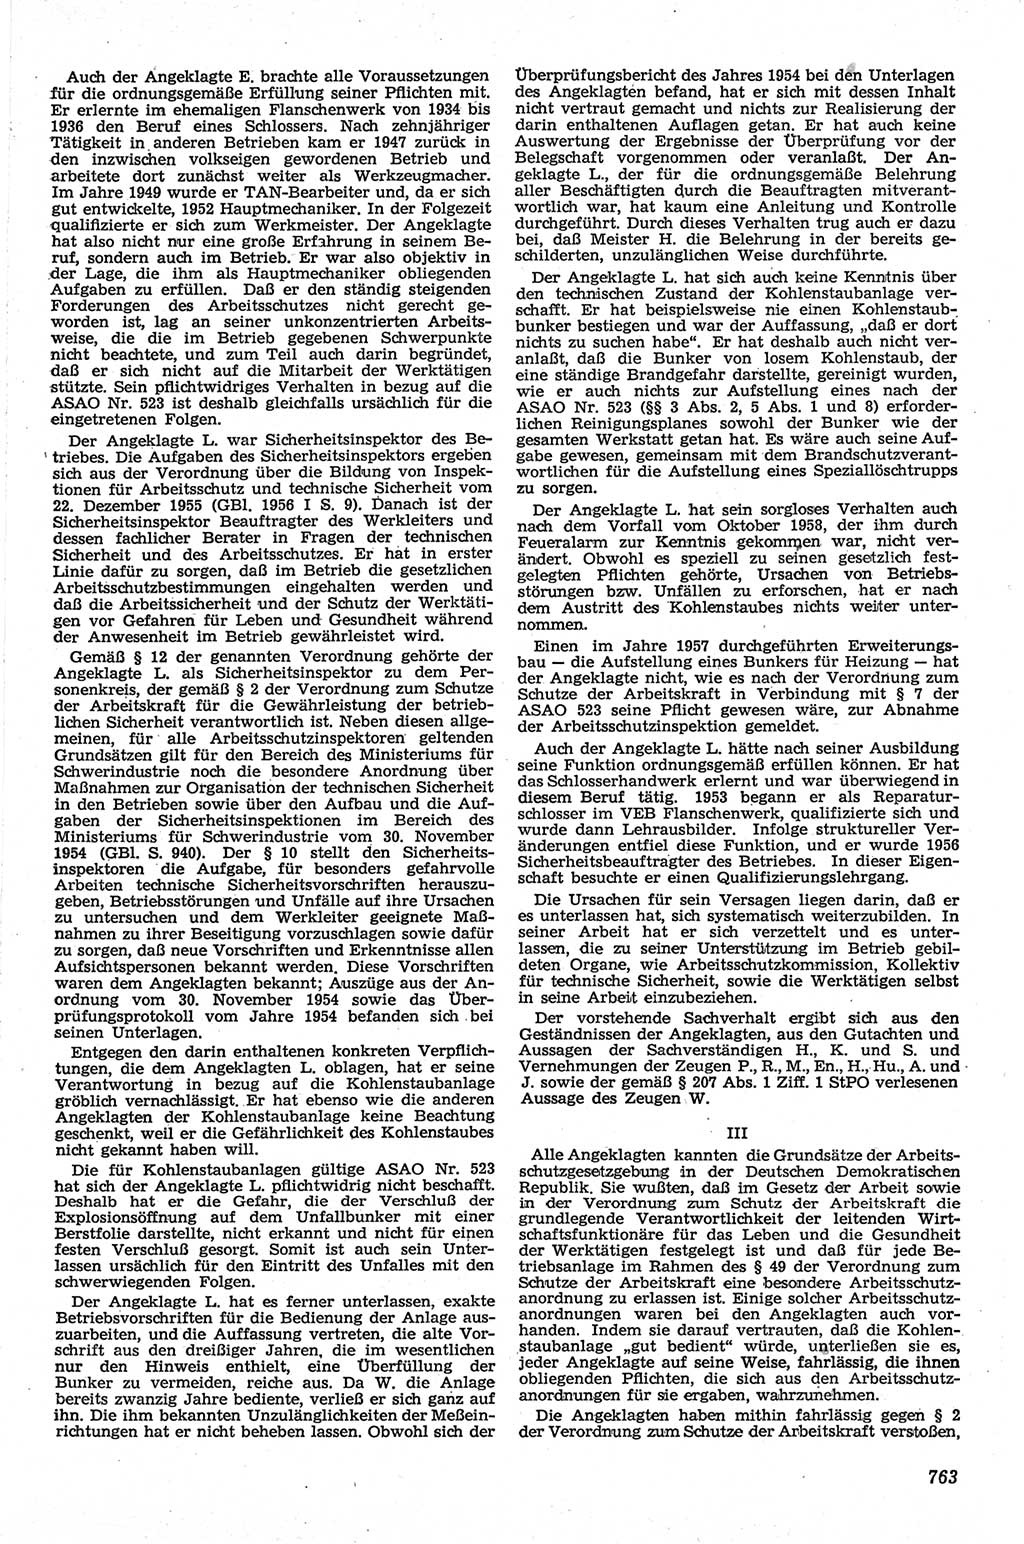 Neue Justiz (NJ), Zeitschrift für Recht und Rechtswissenschaft [Deutsche Demokratische Republik (DDR)], 13. Jahrgang 1959, Seite 763 (NJ DDR 1959, S. 763)